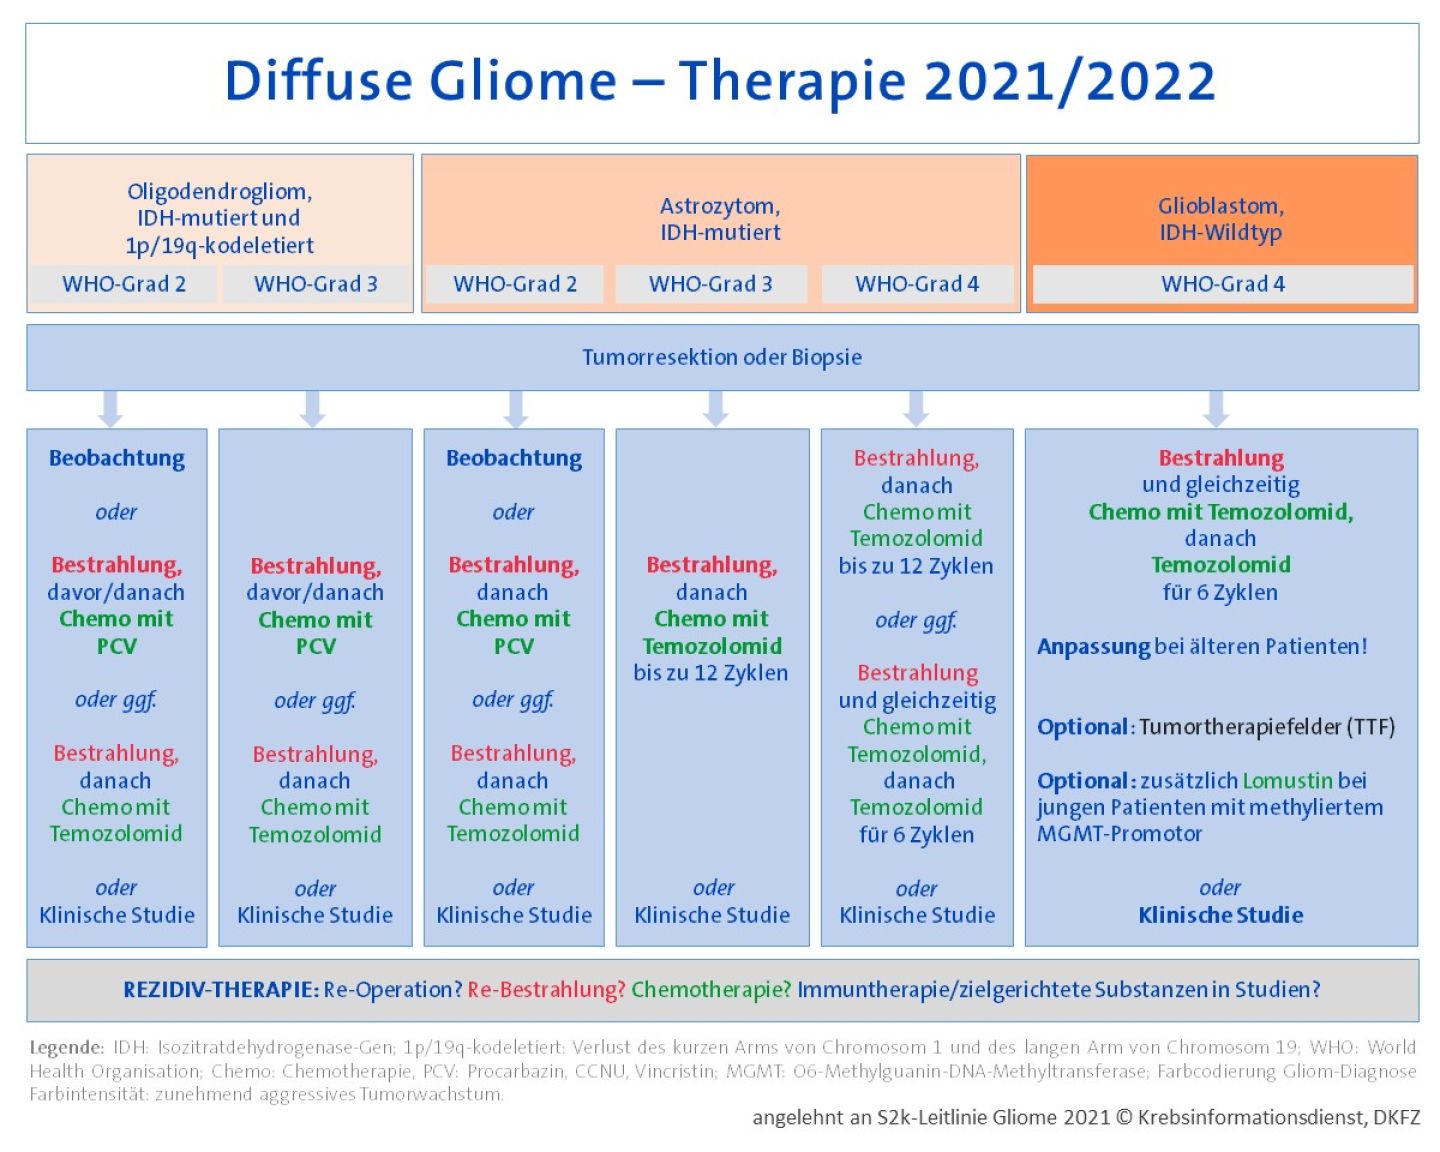 Übersichtstabelle mit Therapieoptionen für diffuse Gliome vom Erwachsenentyp, angelehnt an die S2k-Leitlinie 2021